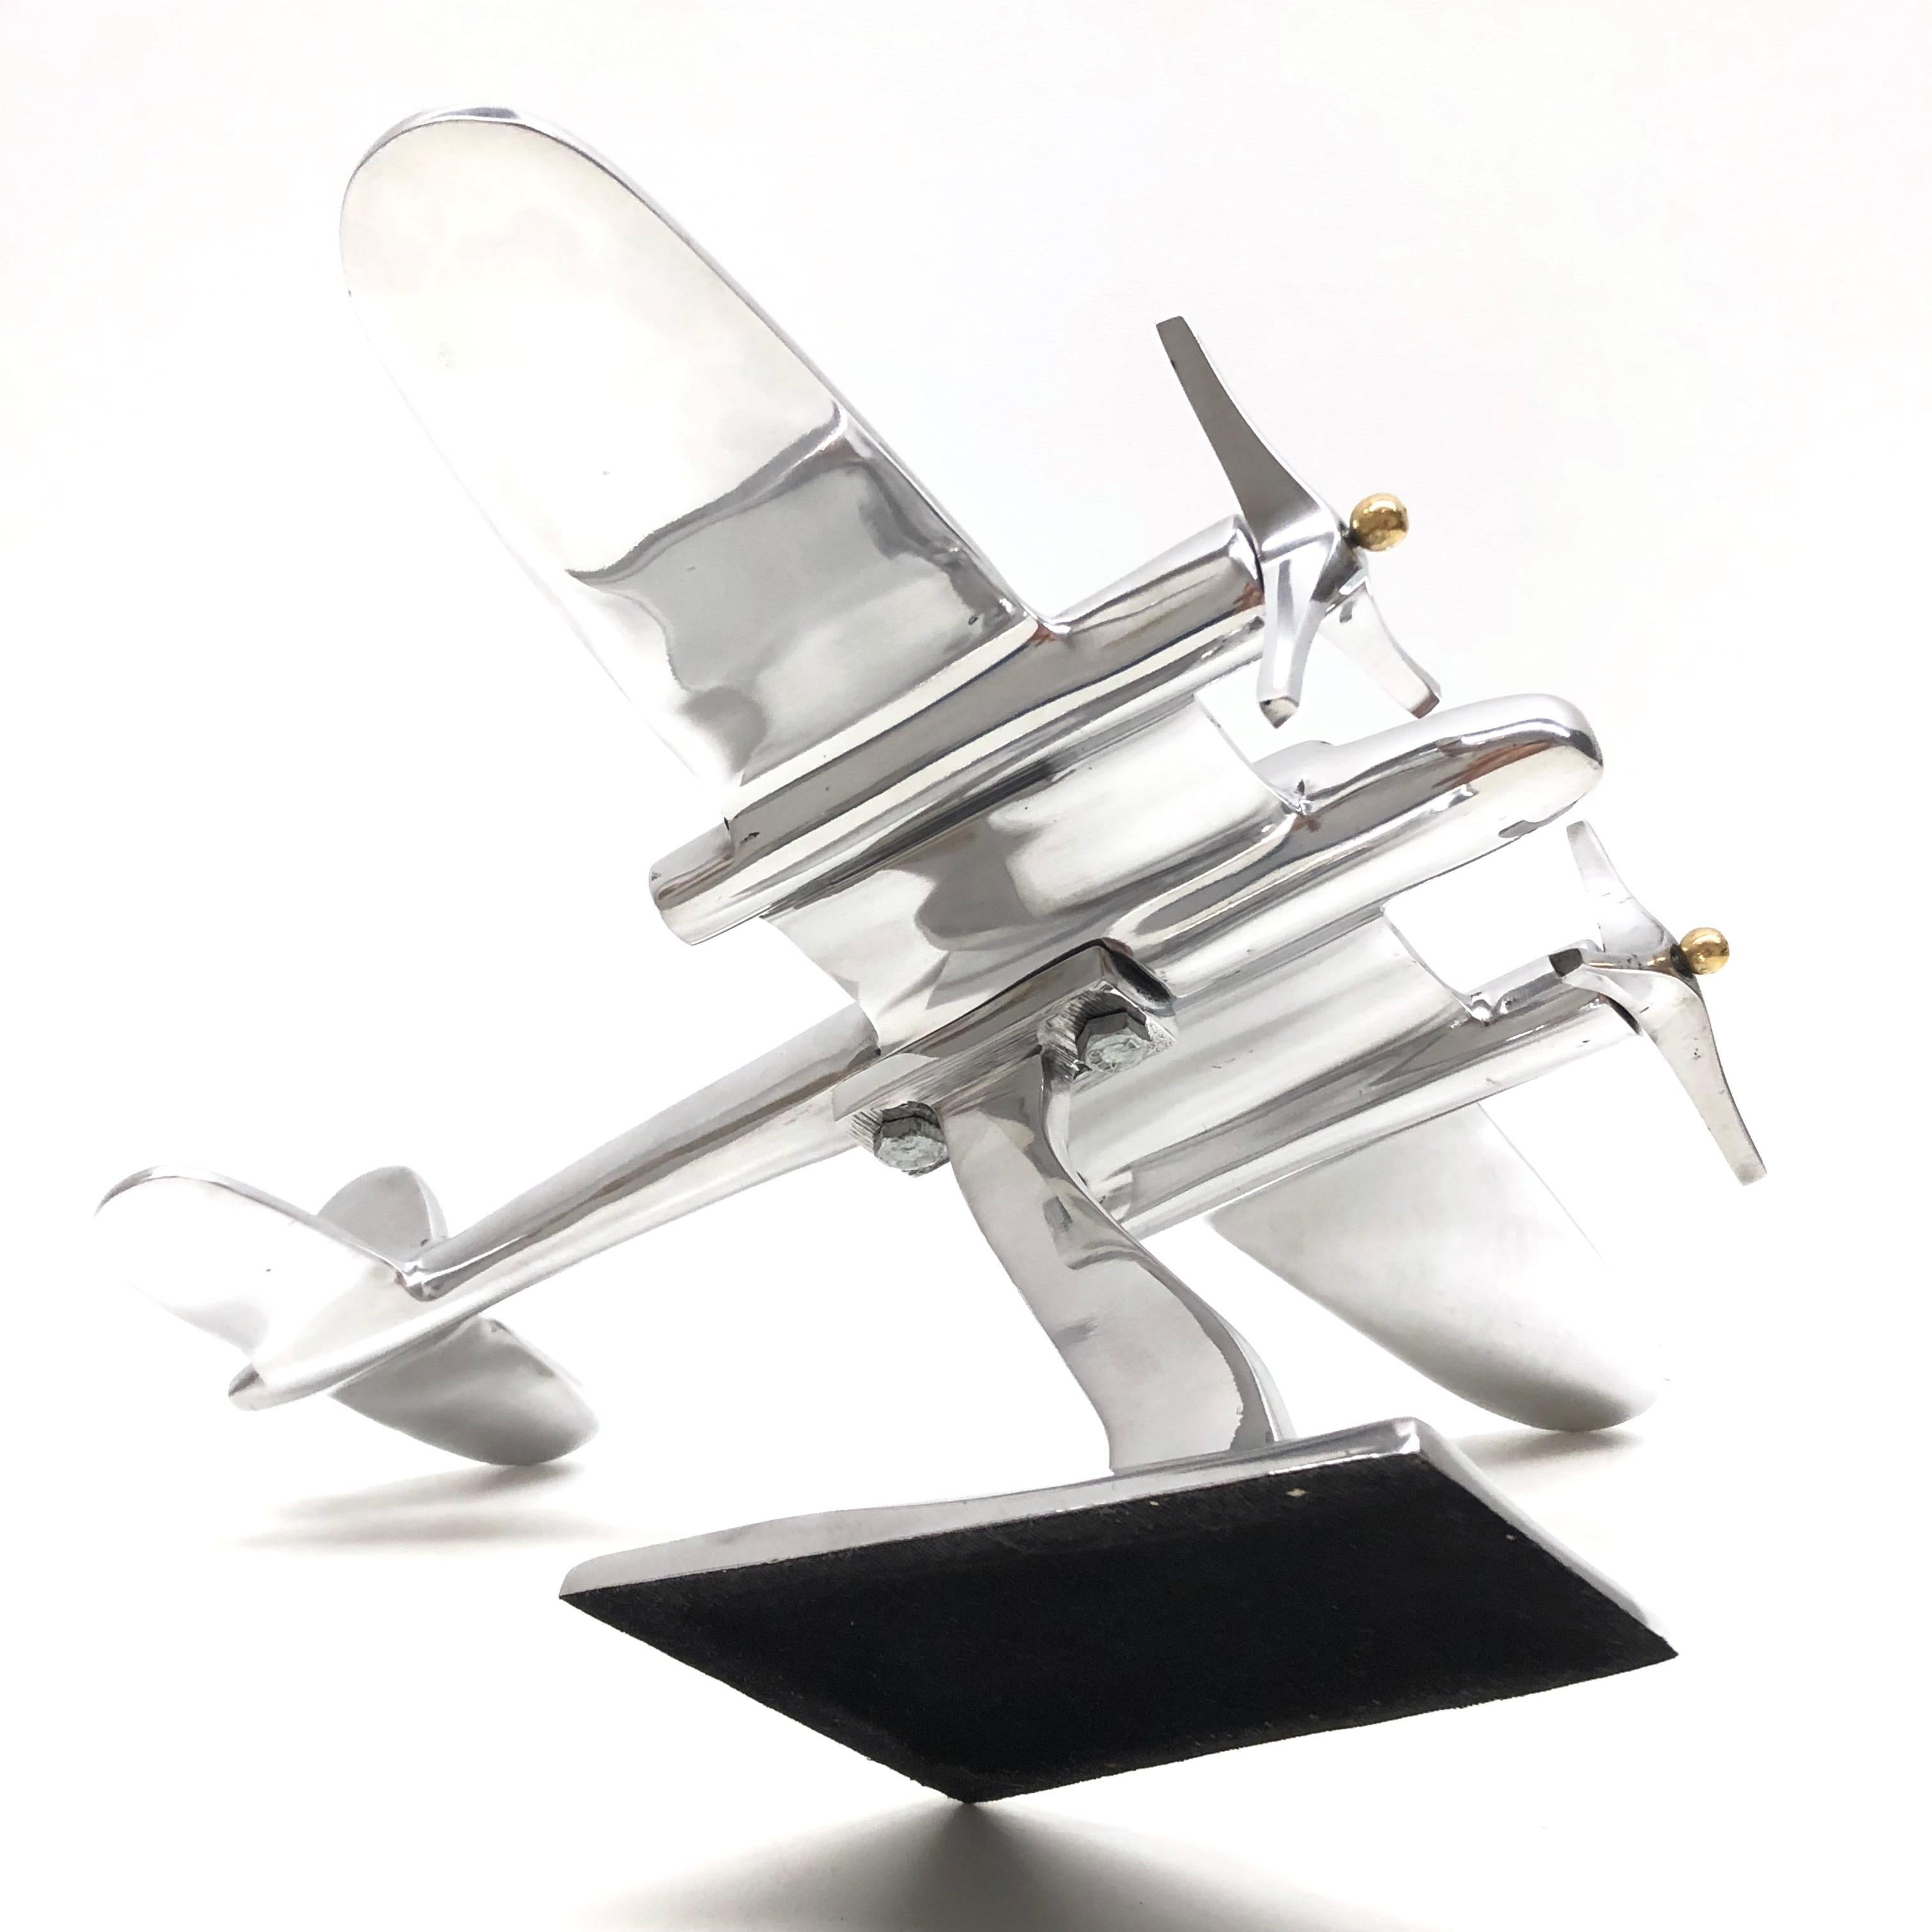 Fin du 20e siècle Statue d'article de bureau industriel vintage en métal, modèle réduit d'avion en forme de fusée, vers 1980